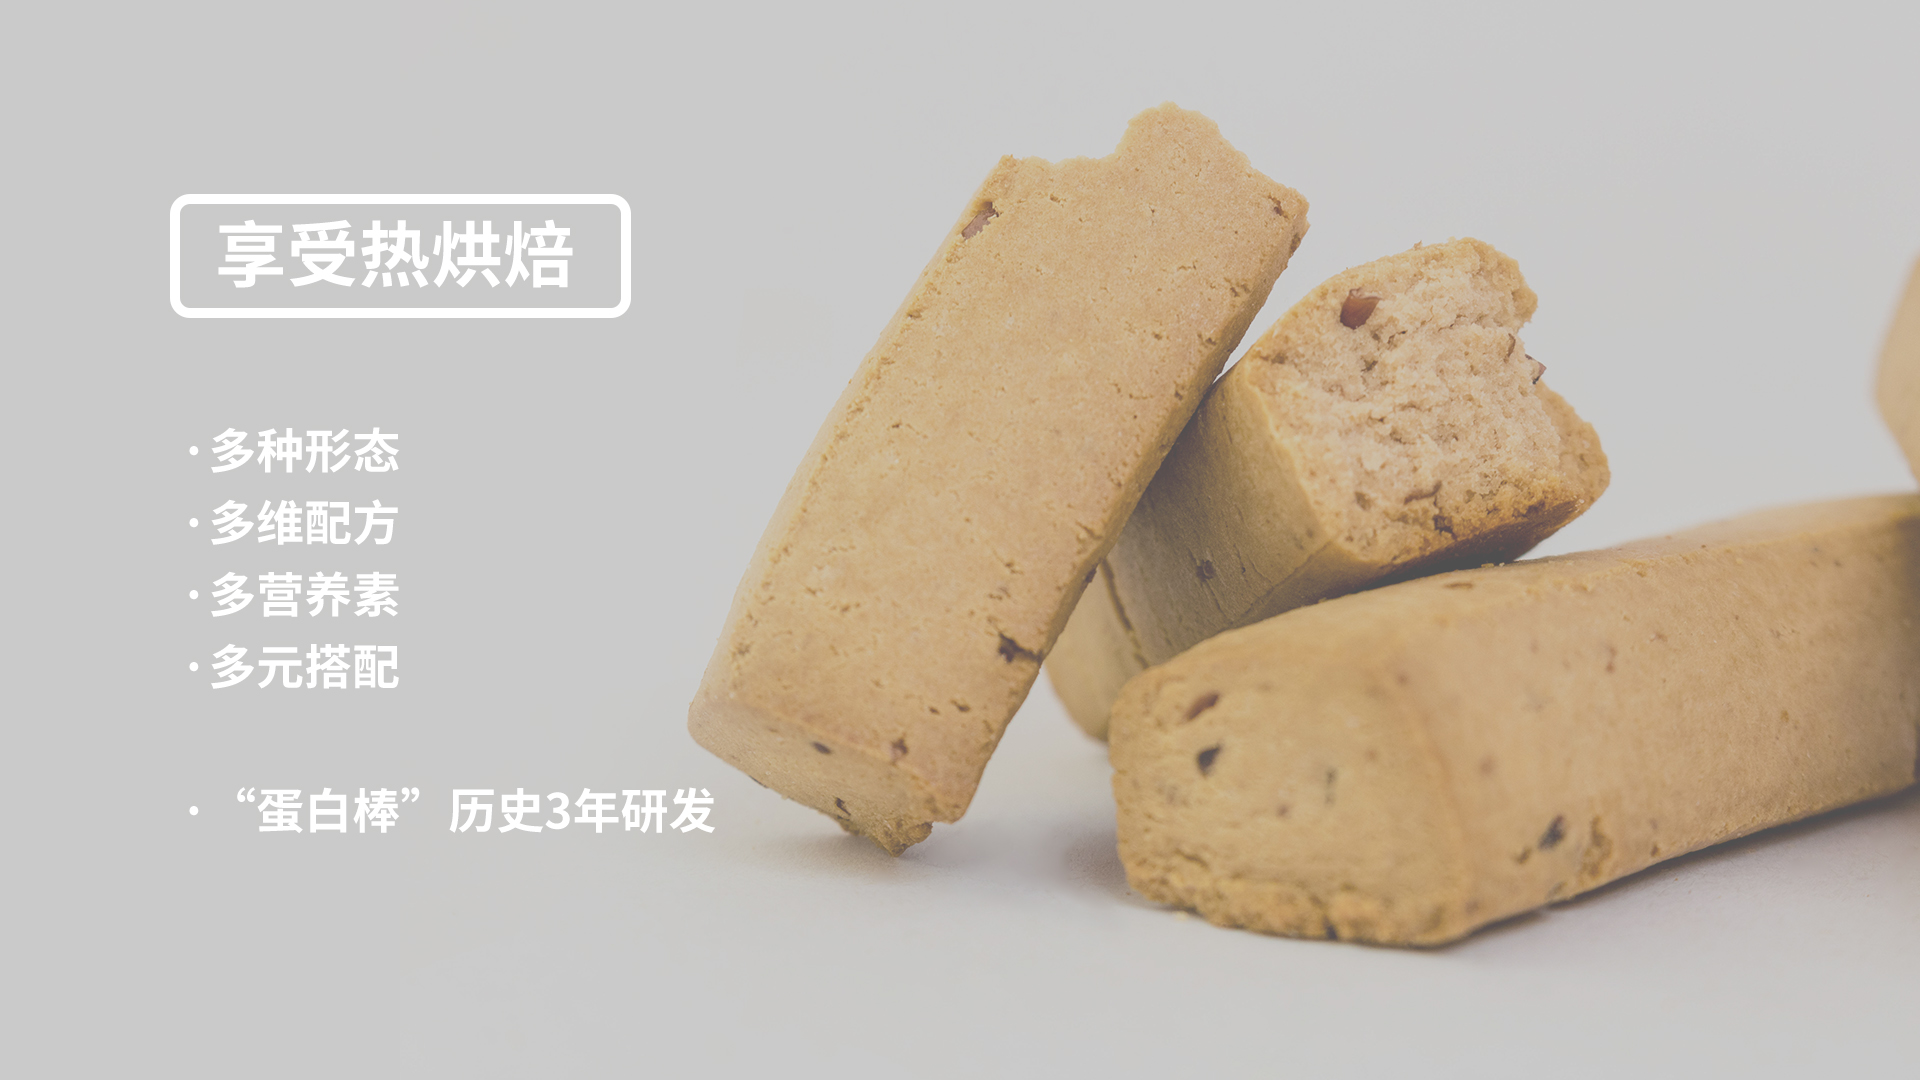 杭州天香食品有限公司第一分公司